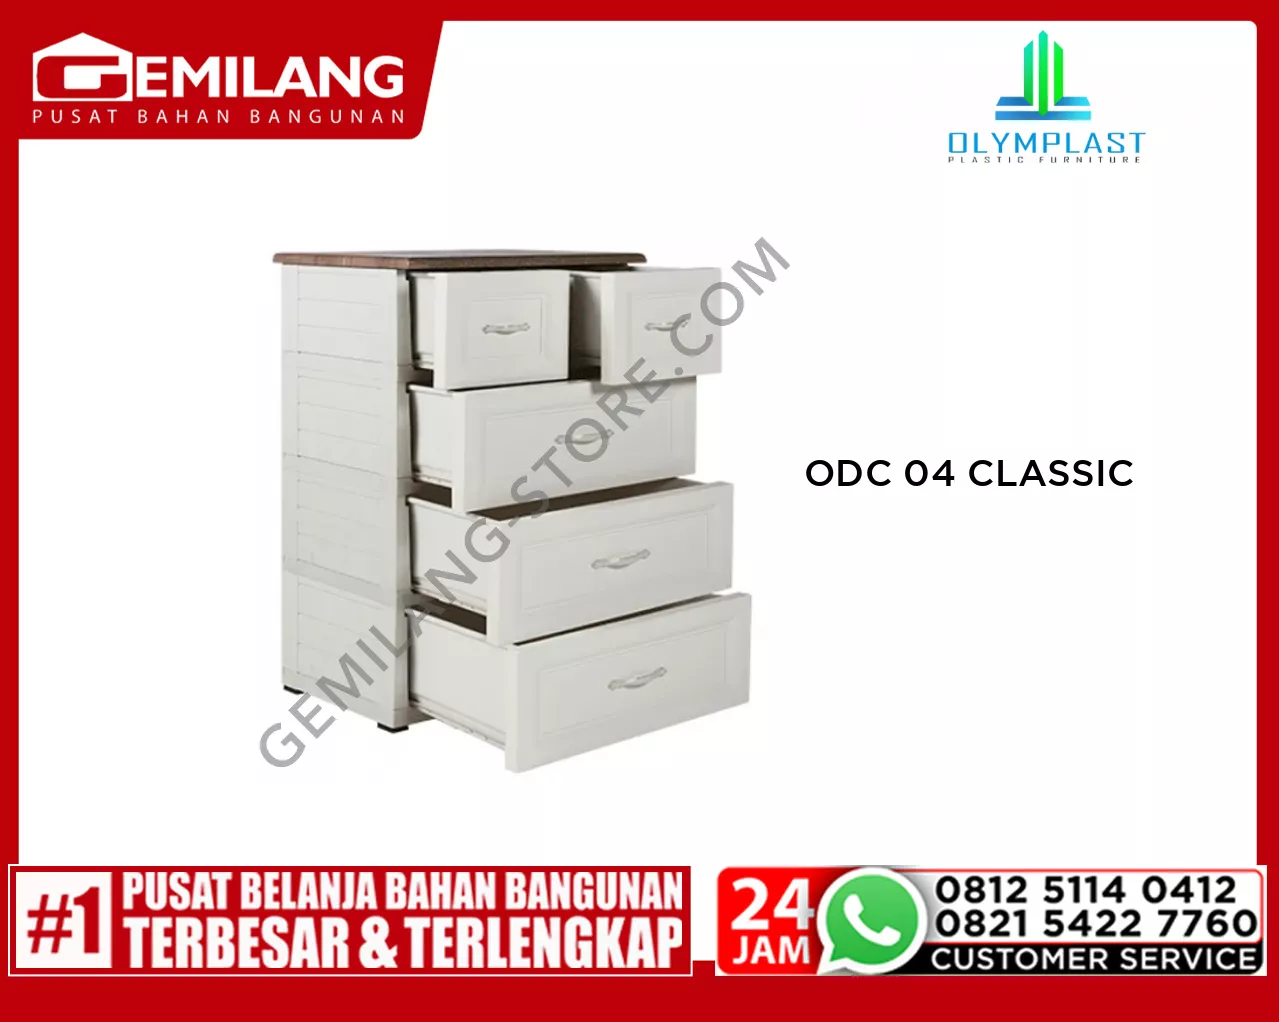 OLYMPLAST ODC 04 CLASSIC B